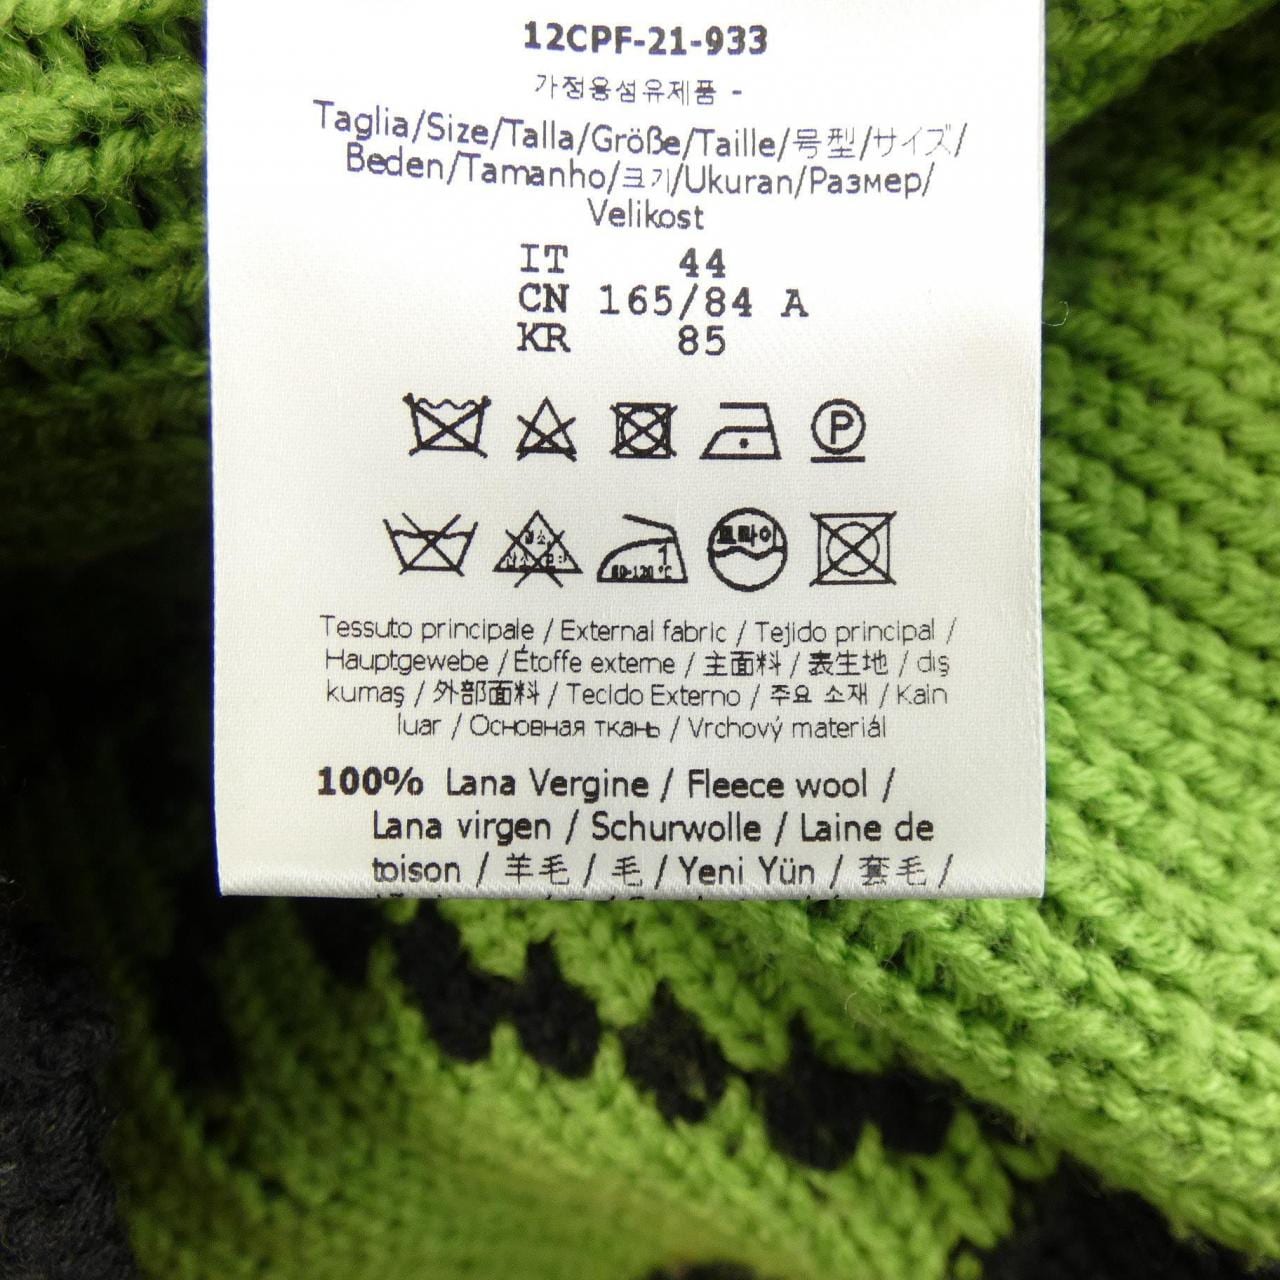 FENDI FENDI knitwear